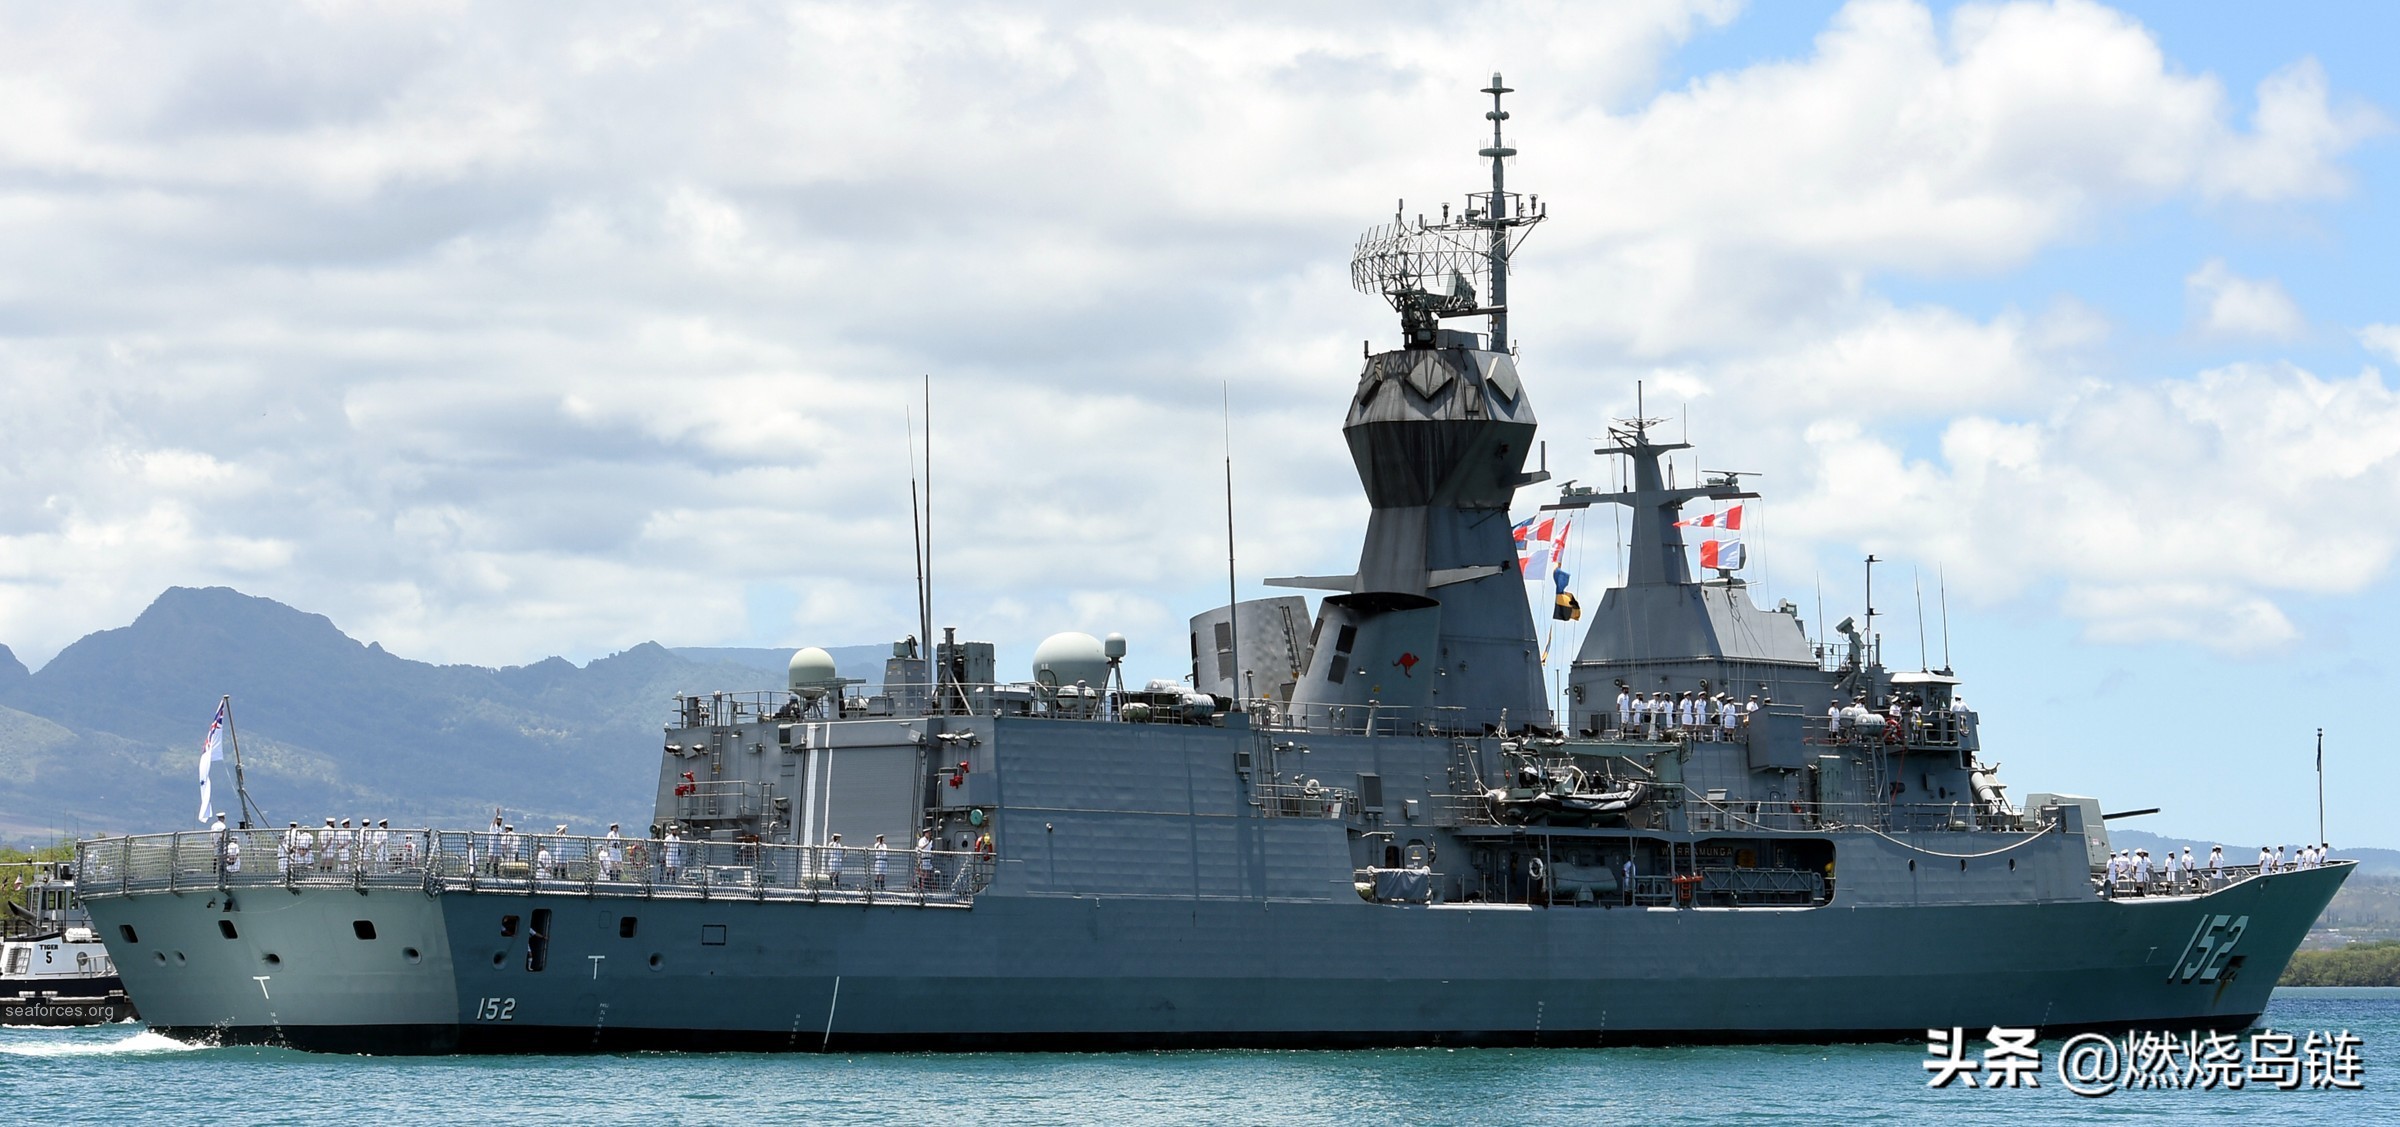 改来改去最终顶个"锤子"的澳大利亚海军"澳新军团"级护卫舰